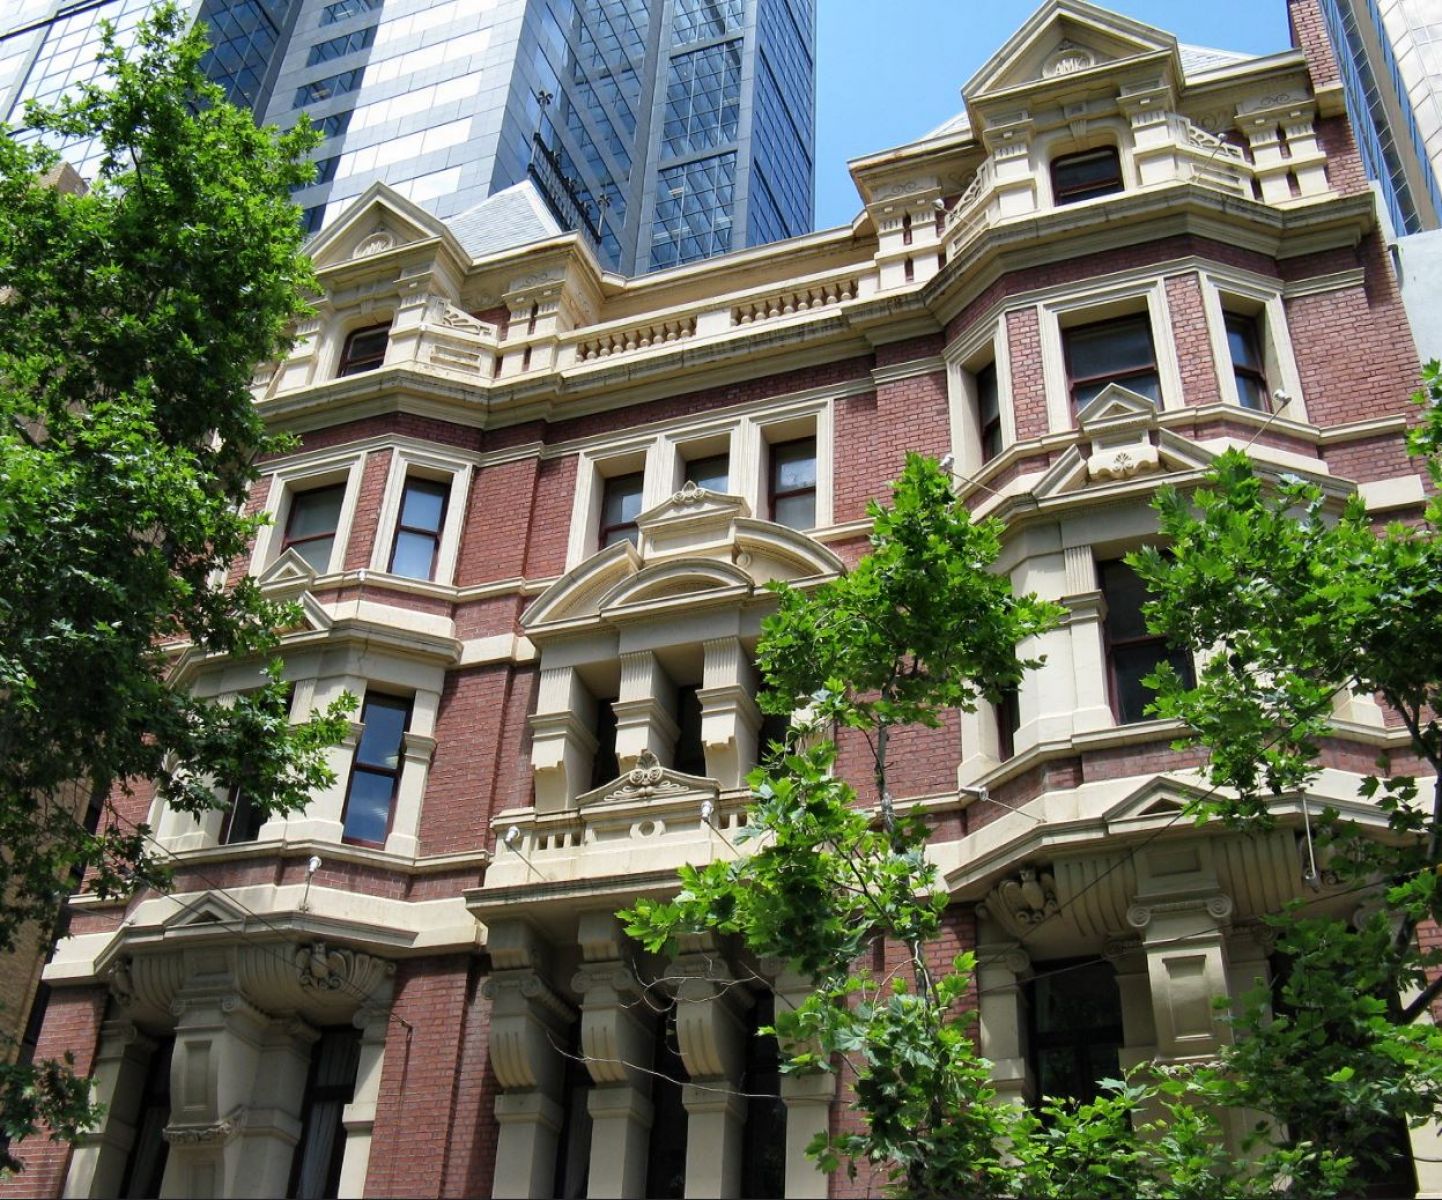 Austral Building - Source Flikr Dean-Melbourne